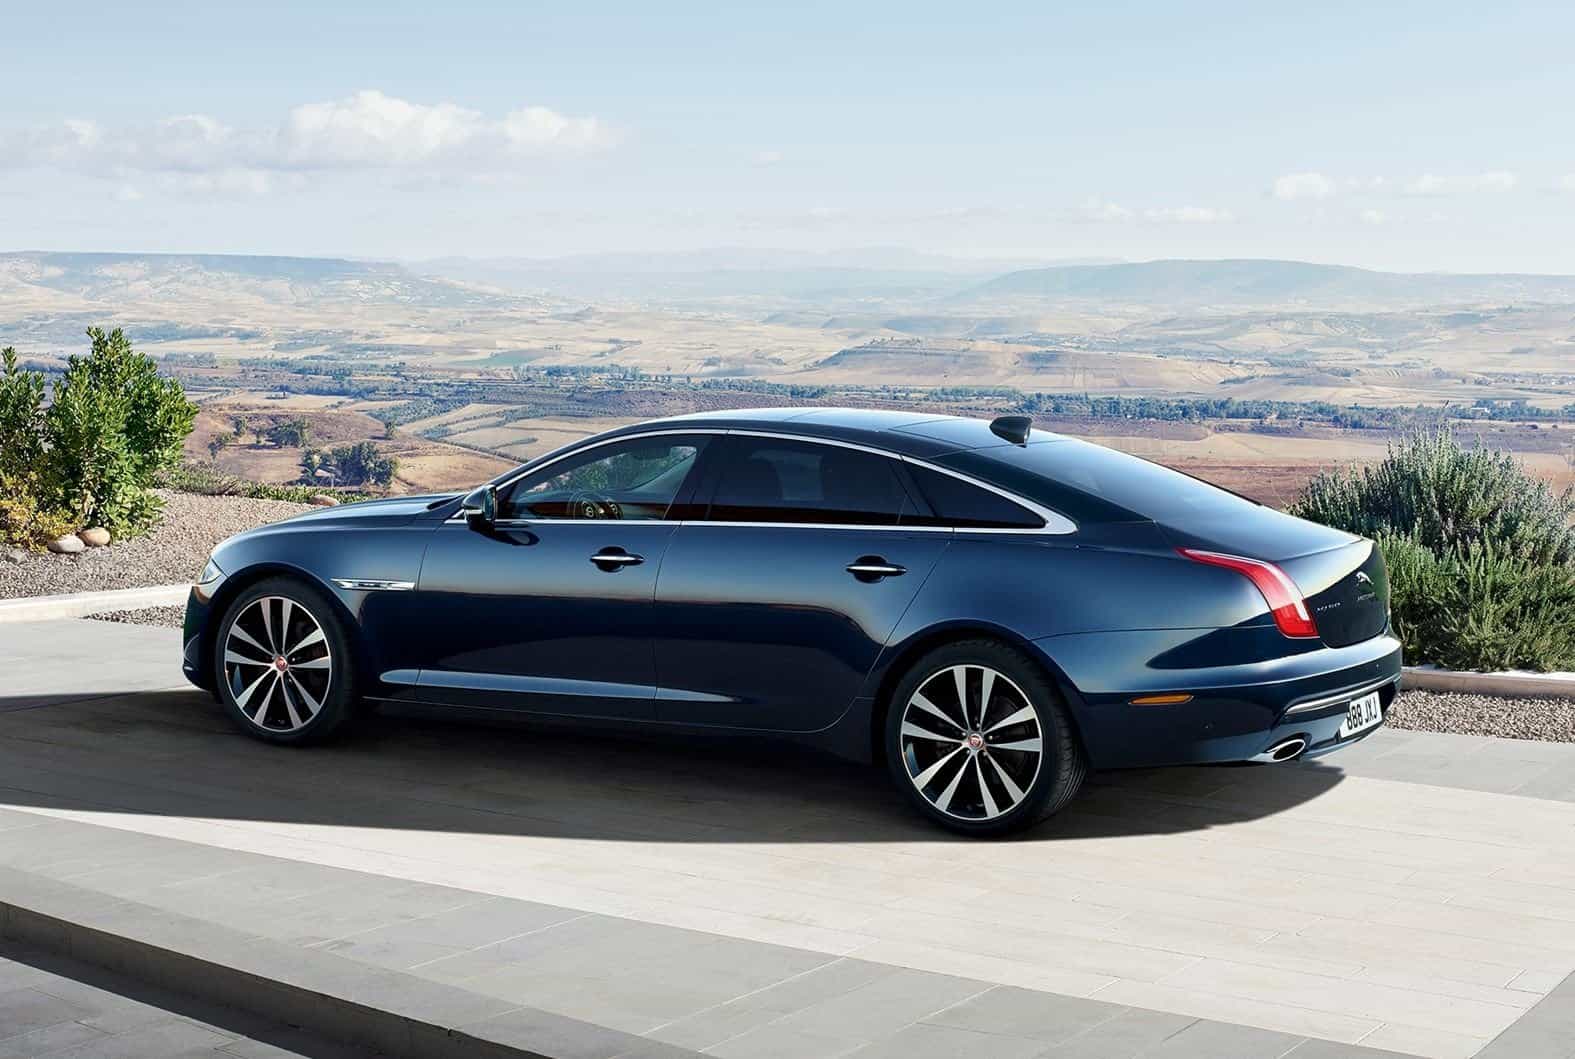 Accu voor Jaguar XJ nodig? Bekijk de beste deals - Accudeal